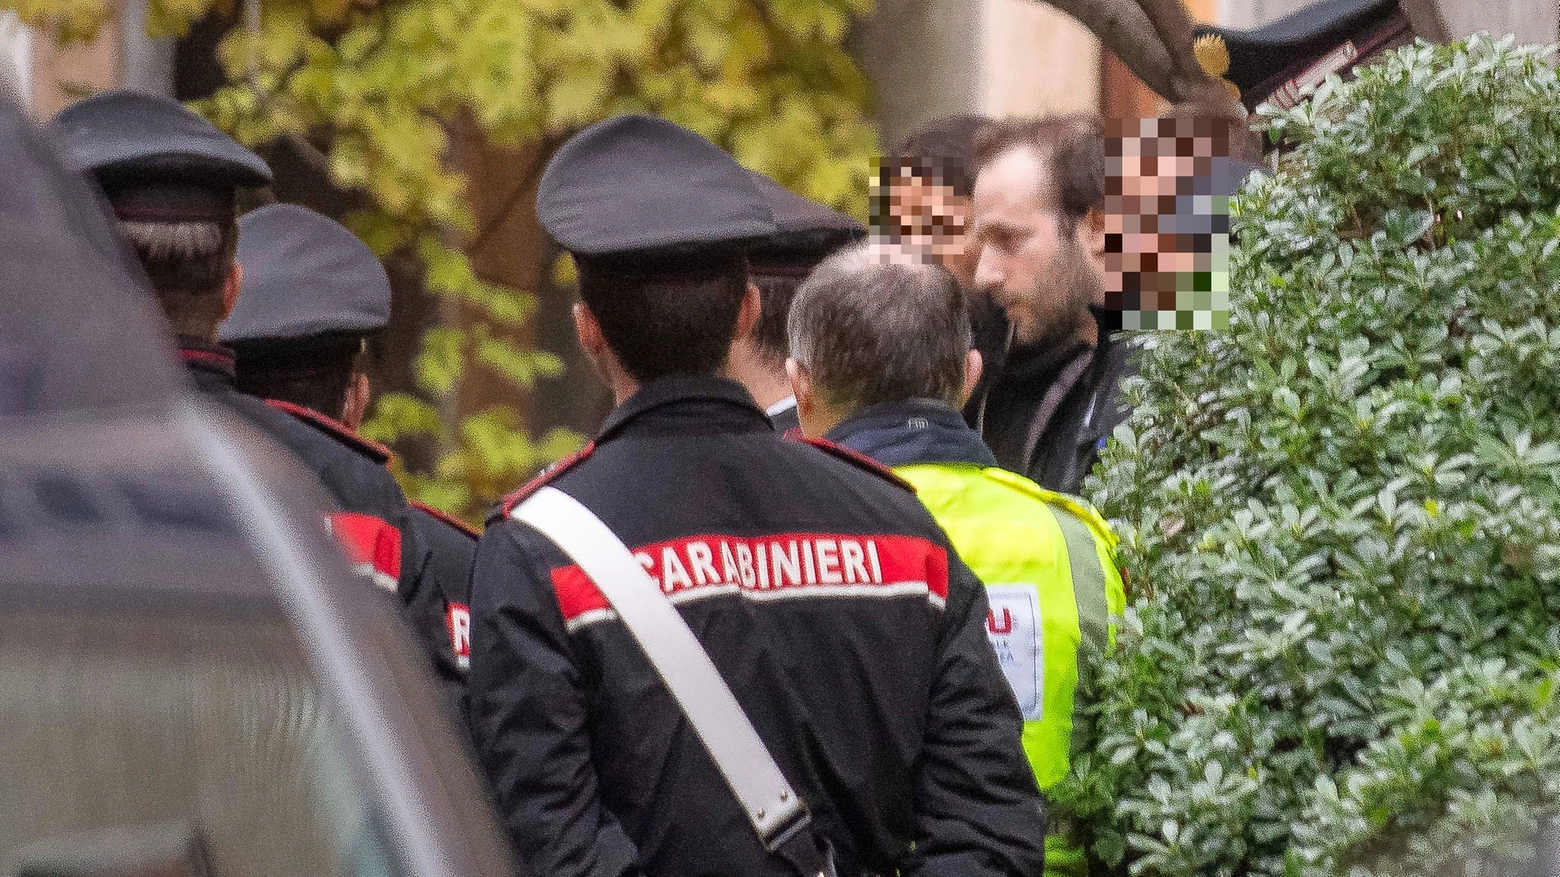 Guido Pozzolini Gobbi Rancilio, 35 anni, accompagnato dai carabinieri in ospedale dopo il ritrovamento del cadavere della madre Fiorenza Rancilio